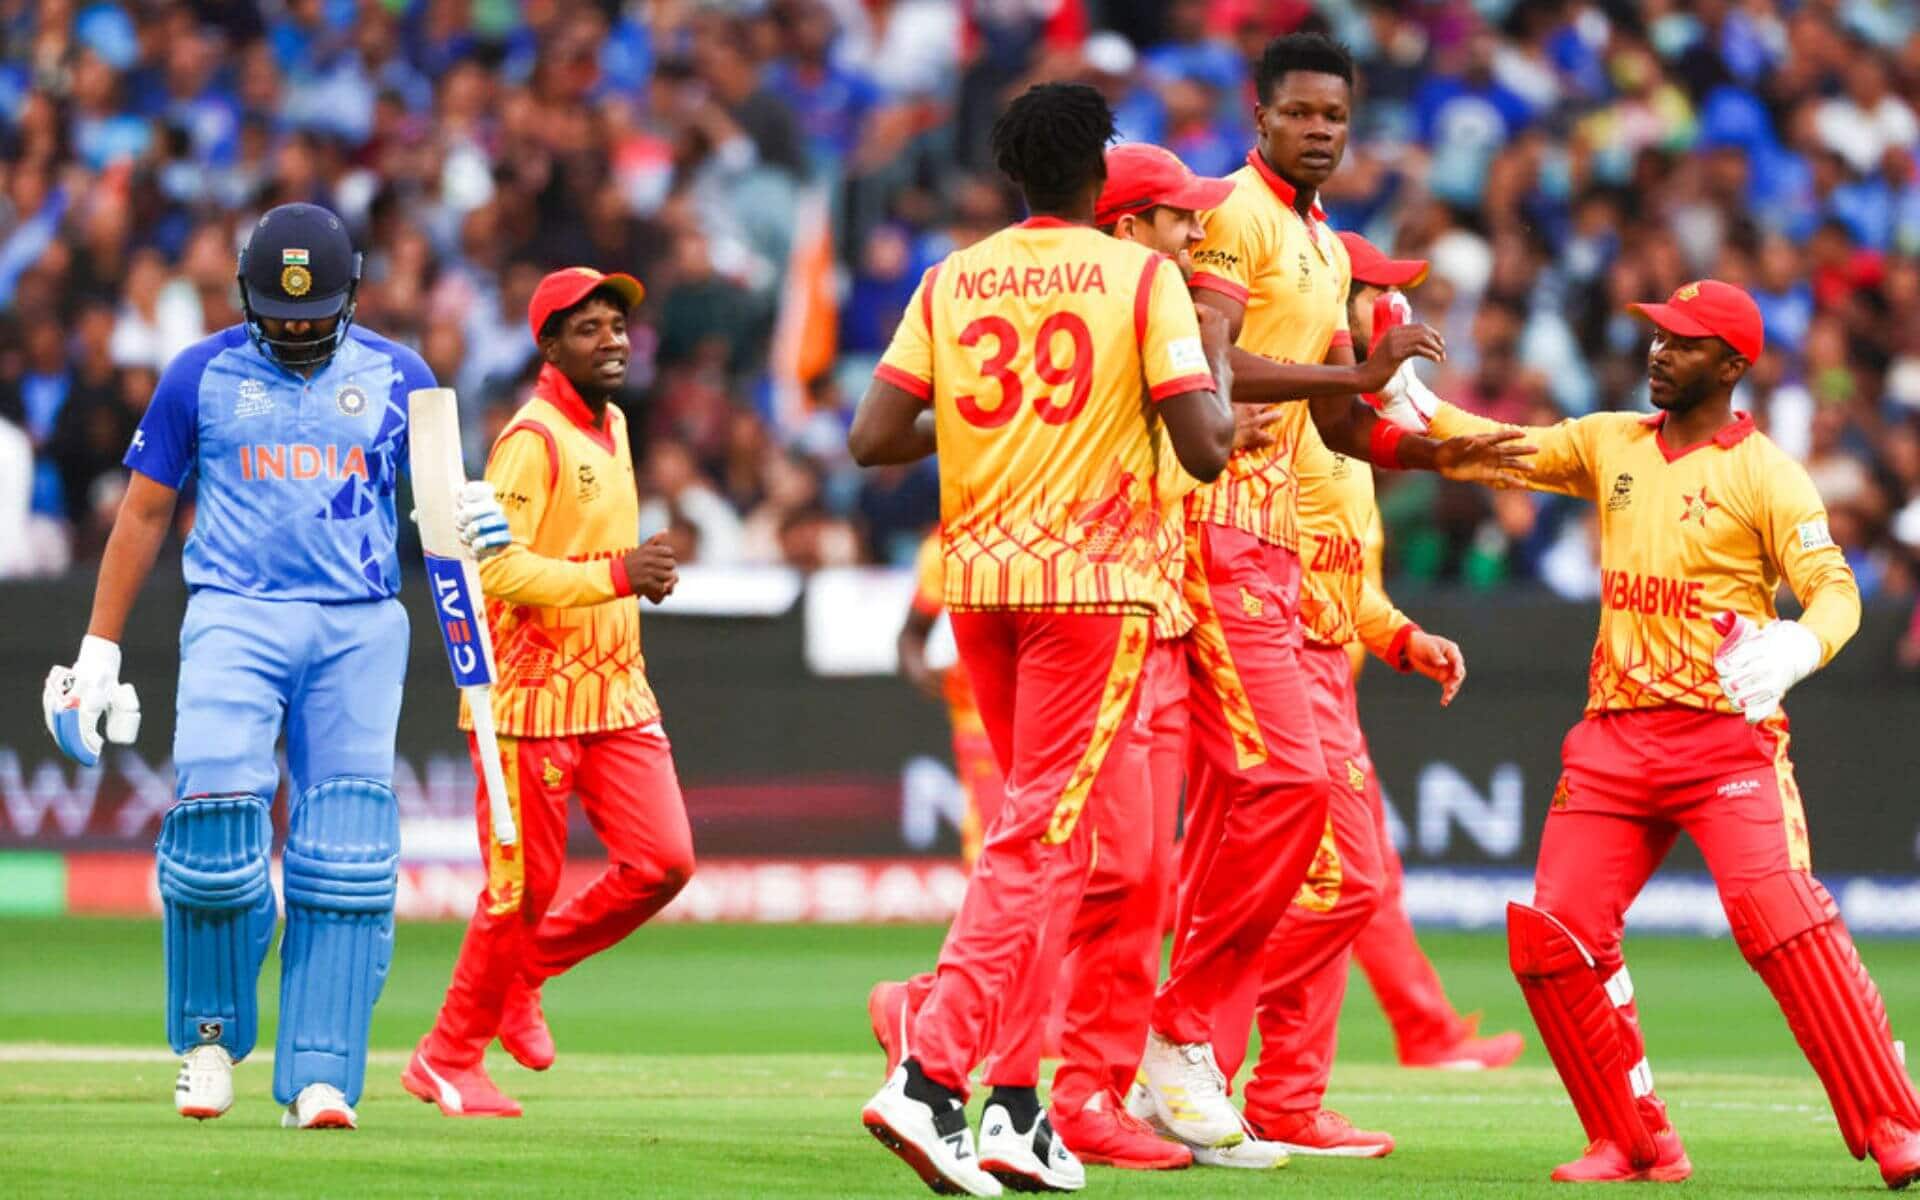 भारत बनाम ज़िम्बाब्वे मैच की फ़ाइनल फोटो (X.com)